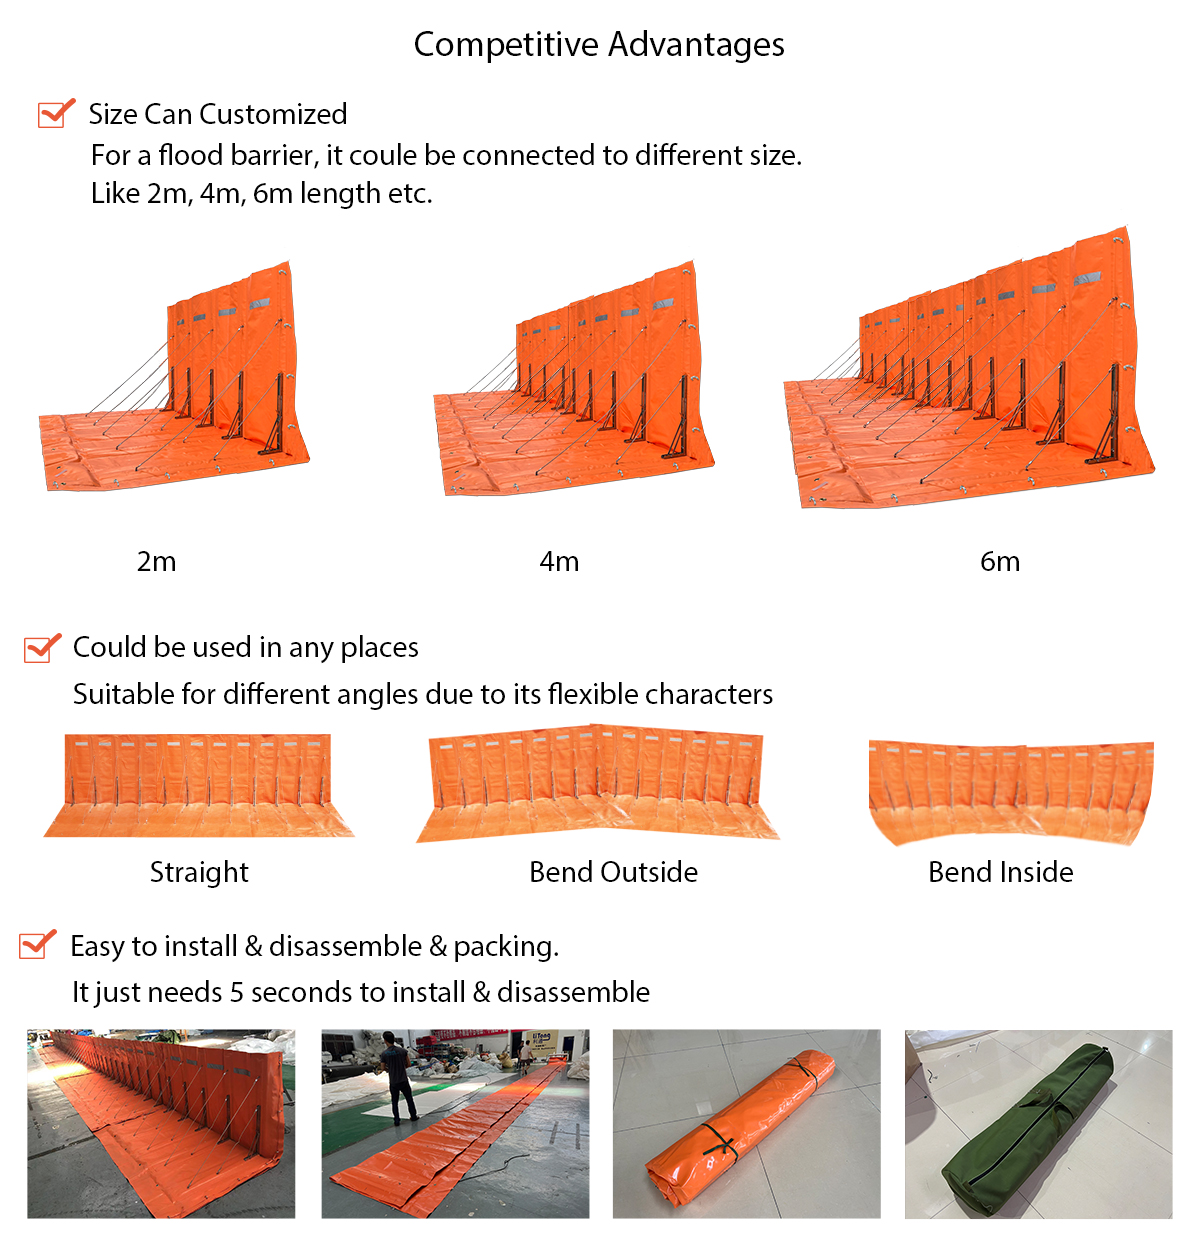 Advantages of orange flood barrier